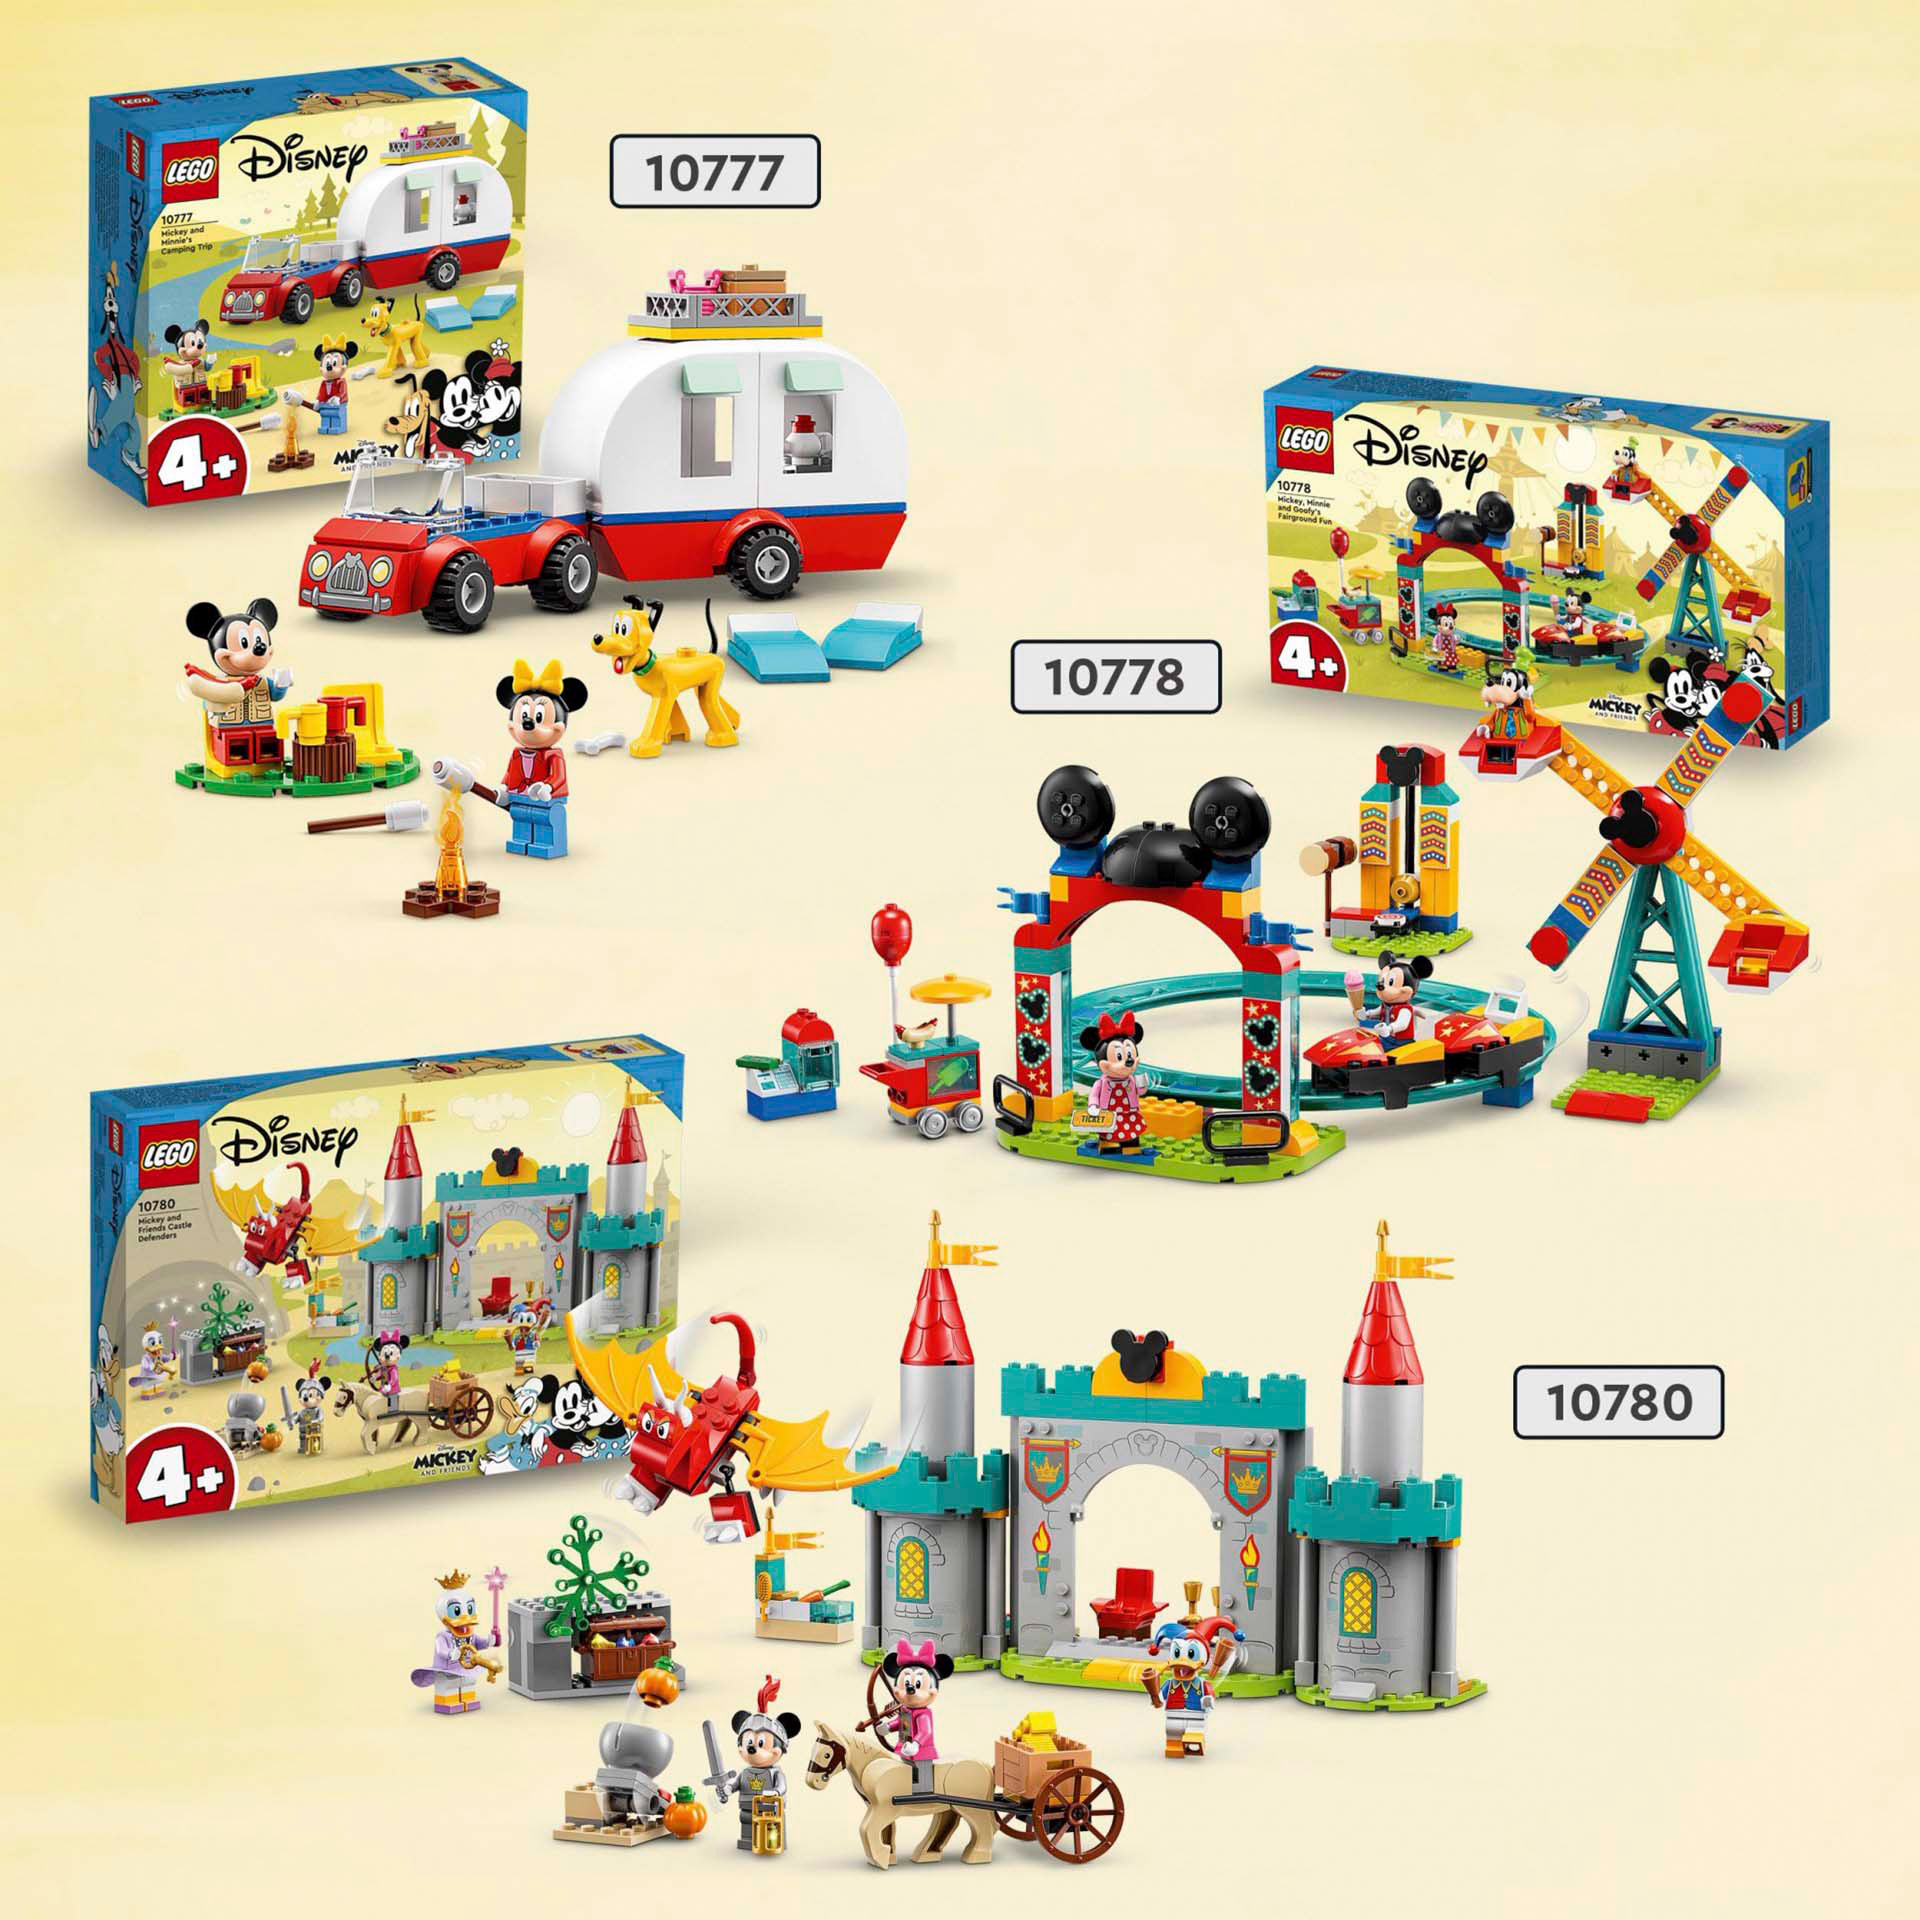 LEGO Disney Topolino e Amici Topolino e i suoi Amici Paladini del Castello, con 10780, , large